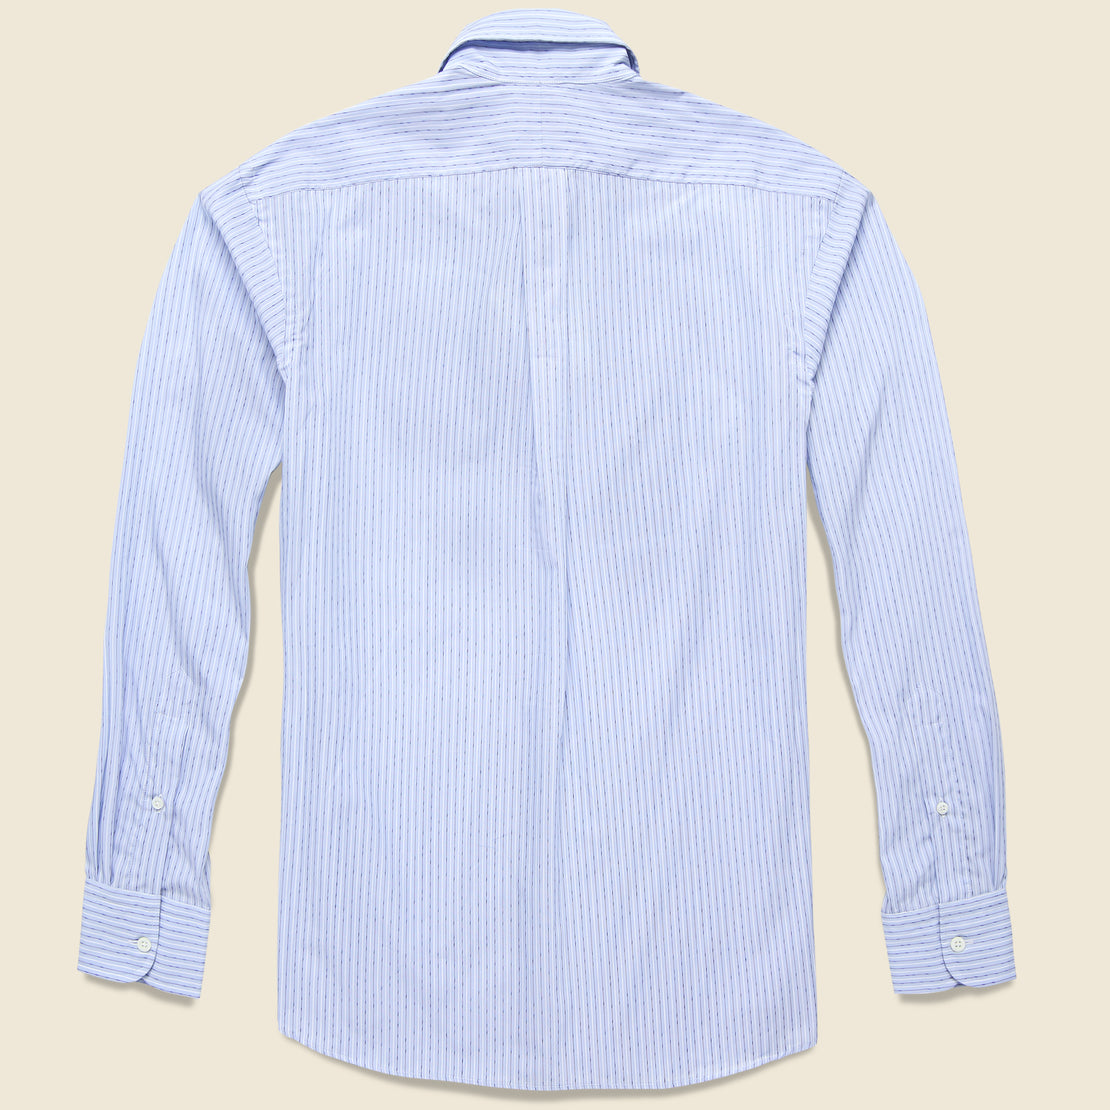 Poplin Stripe Shirt - White/Navy - Hamilton Shirt Co. - STAG Provisions - Tops - L/S Woven - Stripe